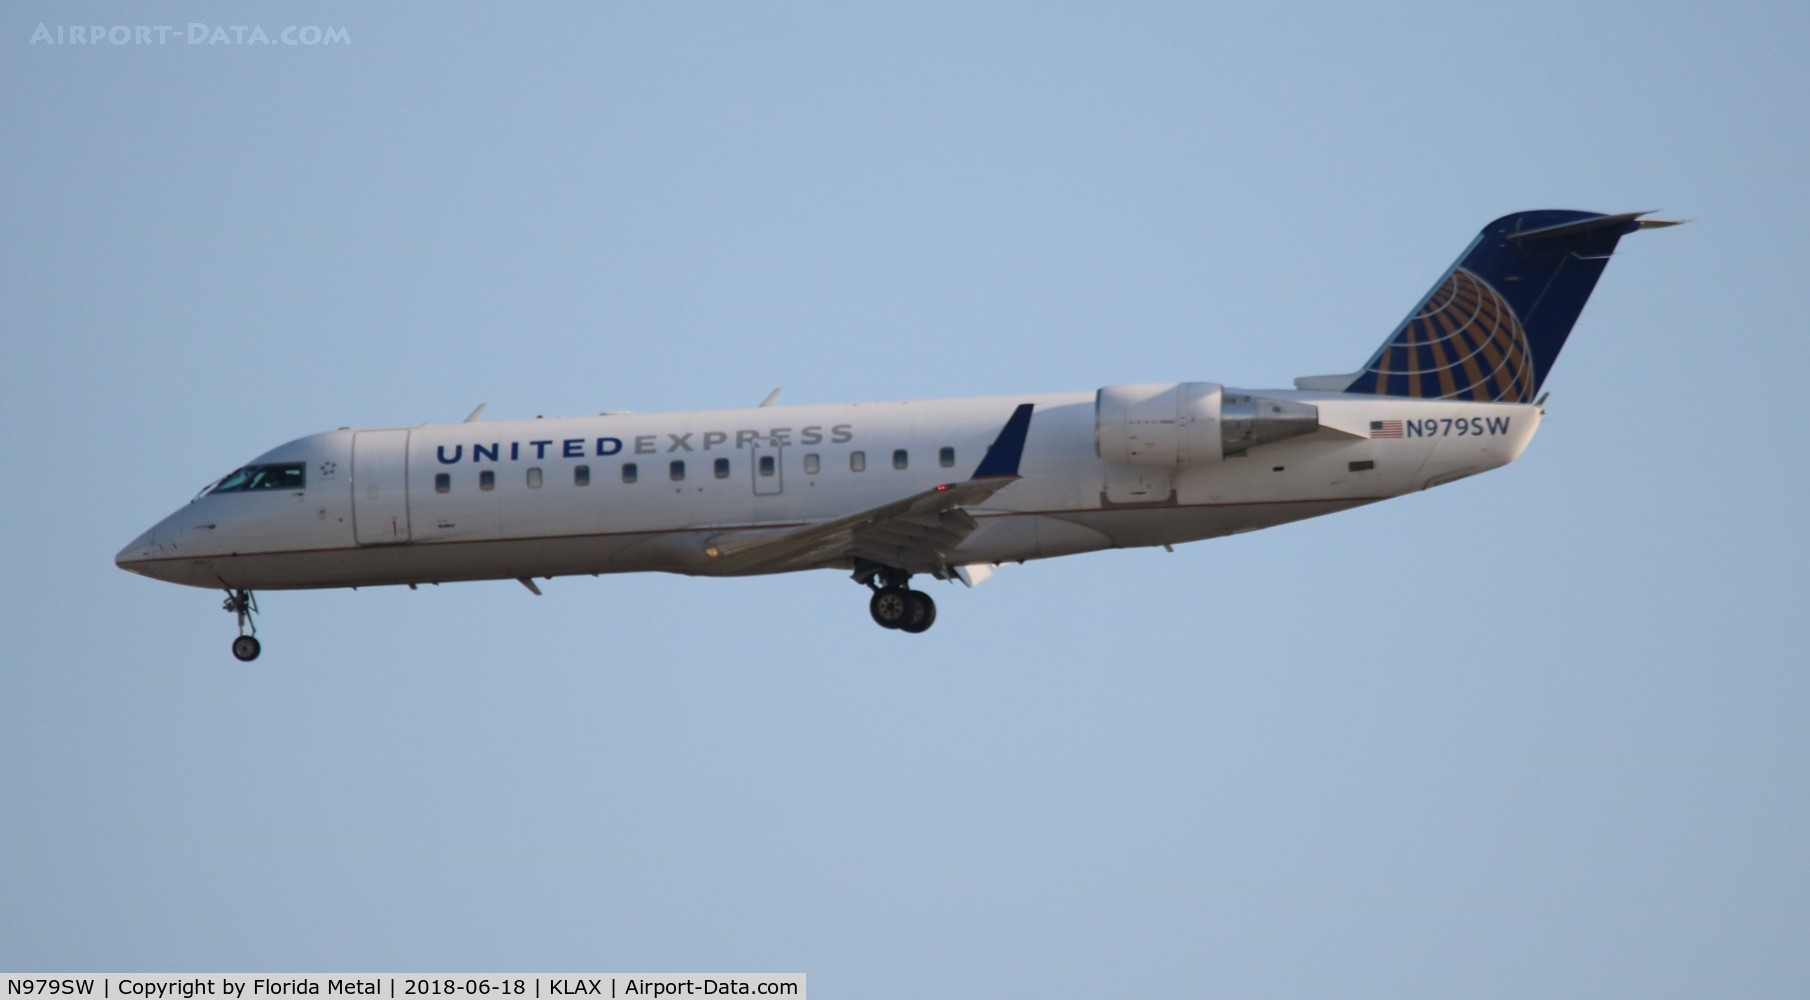 N979SW, 2004 Bombardier CRJ-200ER (CL-600-2B19) C/N 7954, United Express